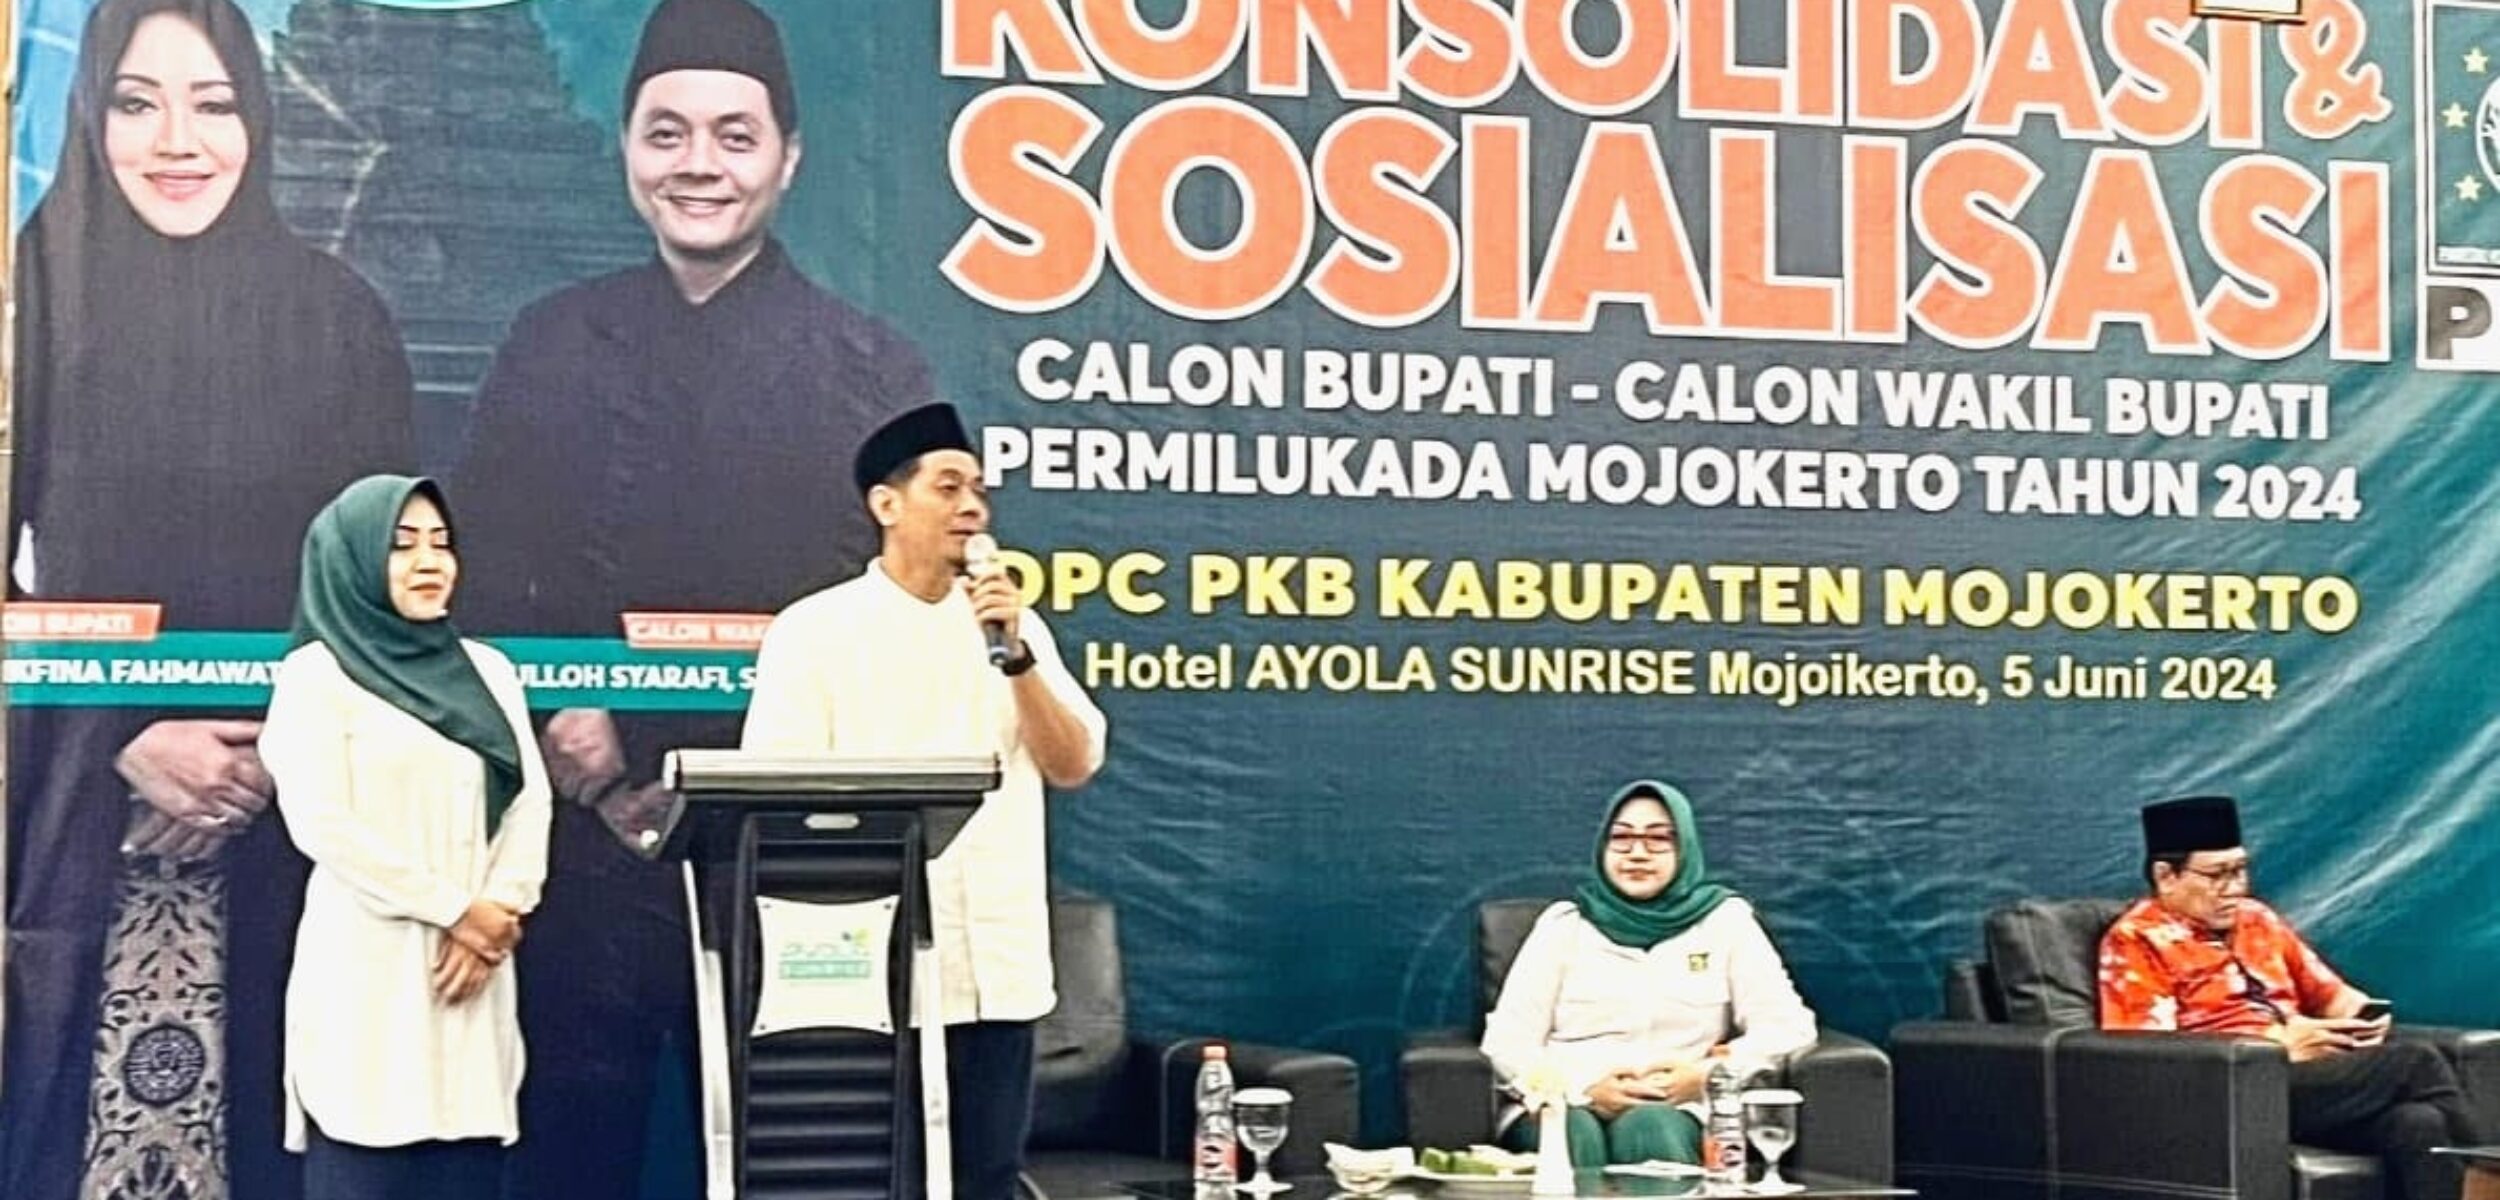 Rekom PKB Final Usung Ikfina - Gus Dulloh di Pilkada Kabupaten Mojokerto 2024